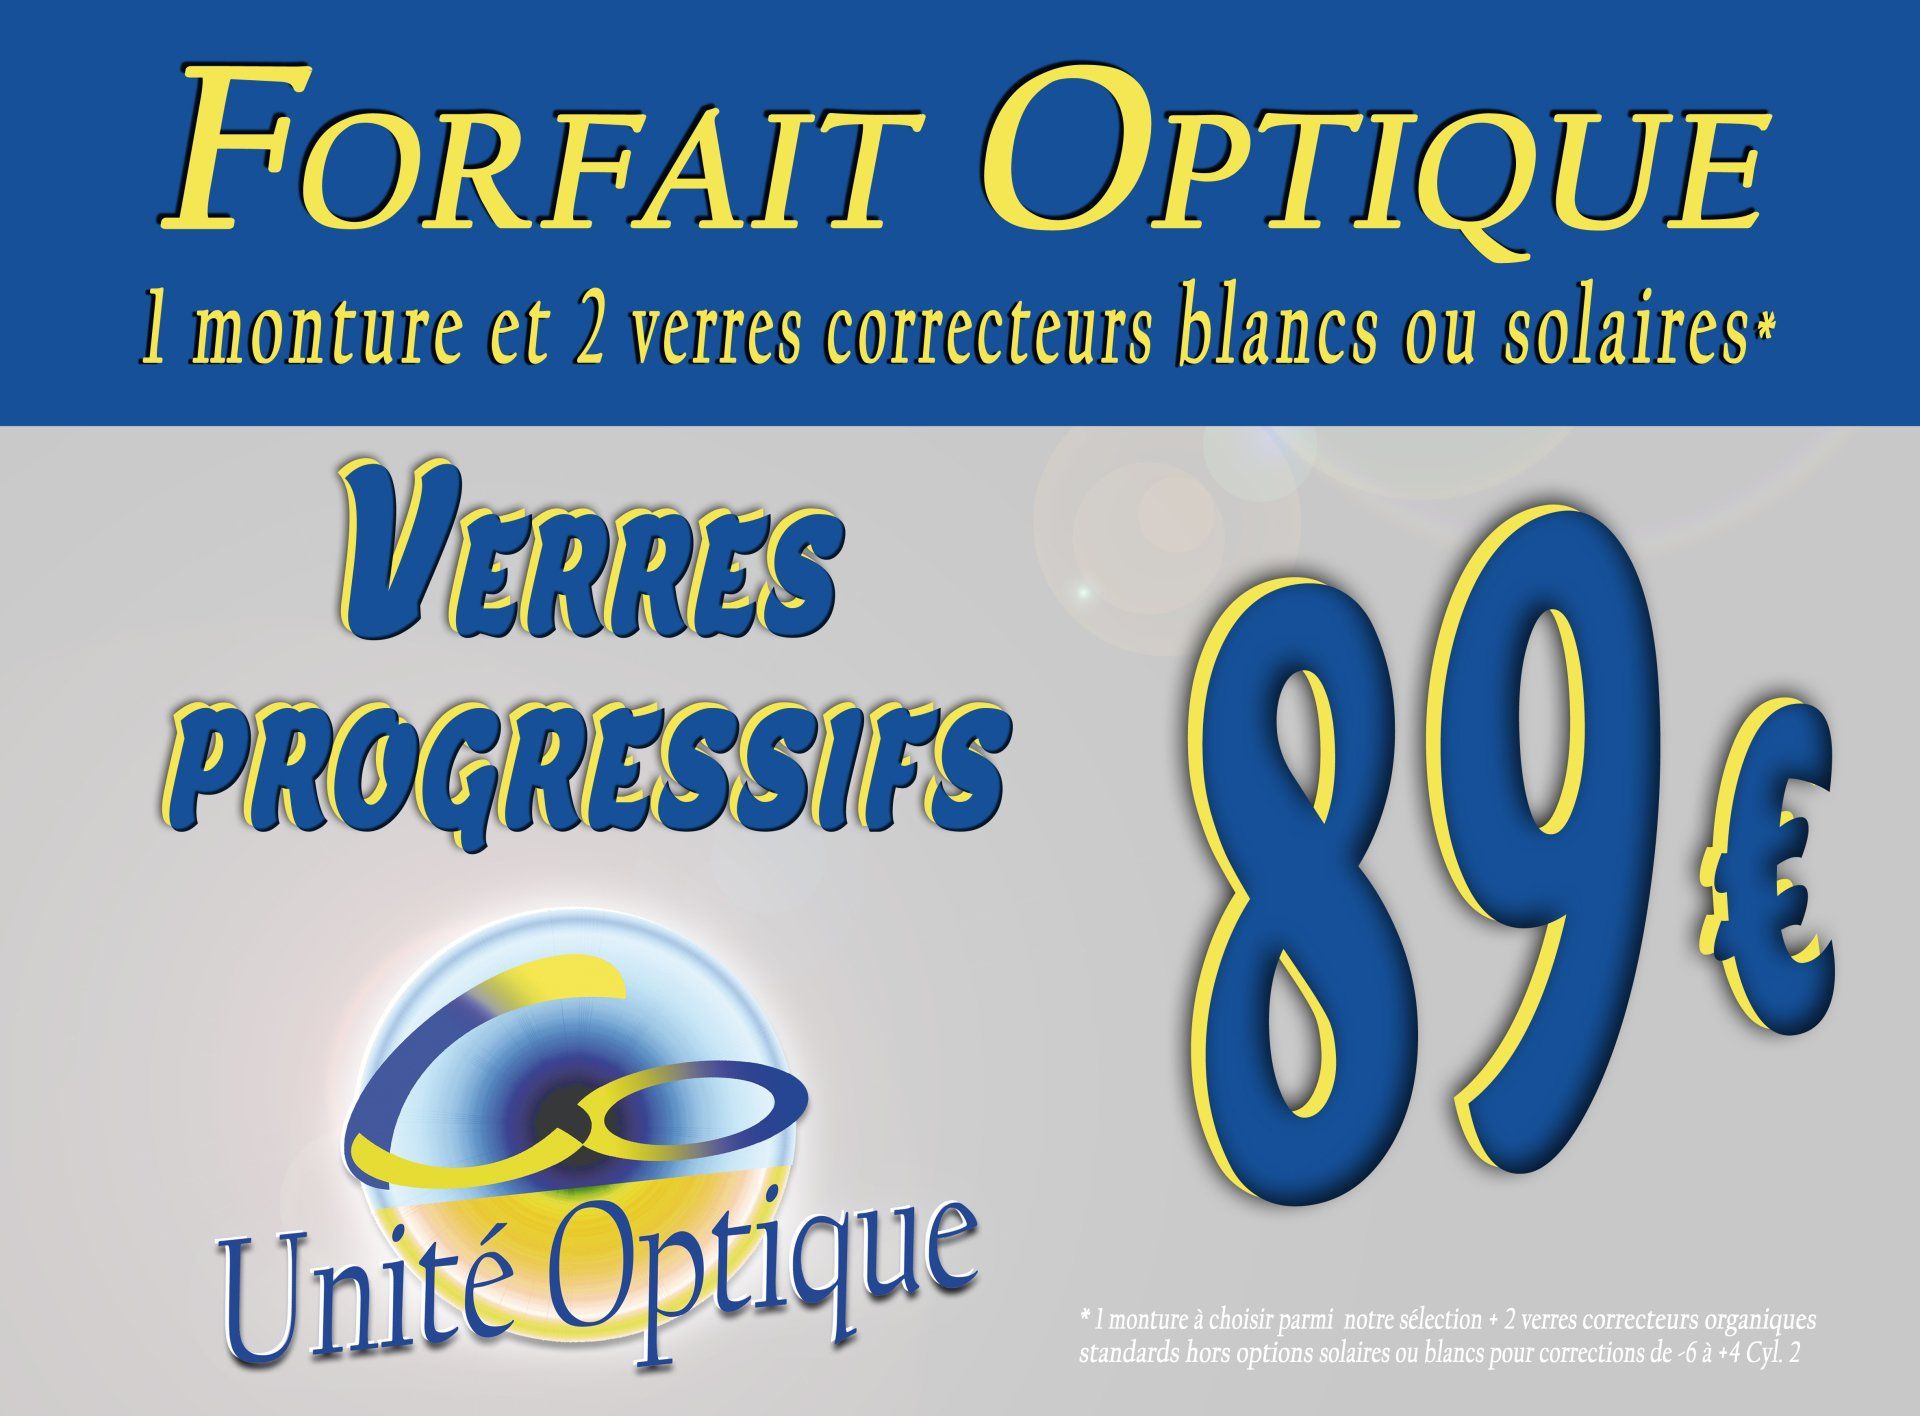 Unité Optique Forfait optique 89€